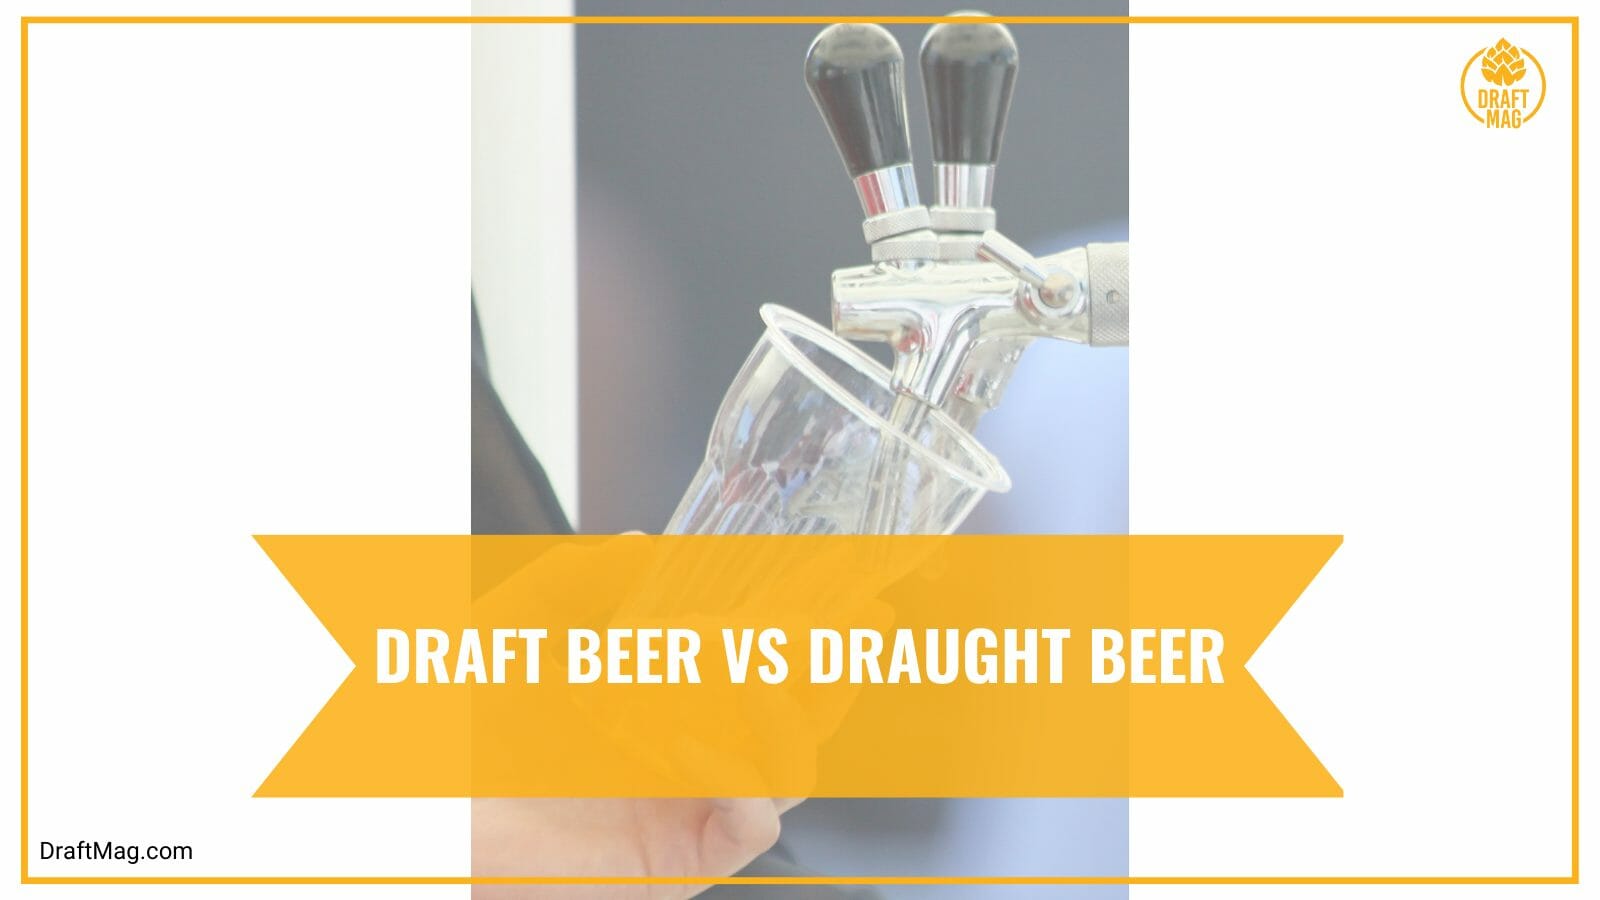 Draft beer vs draught beer